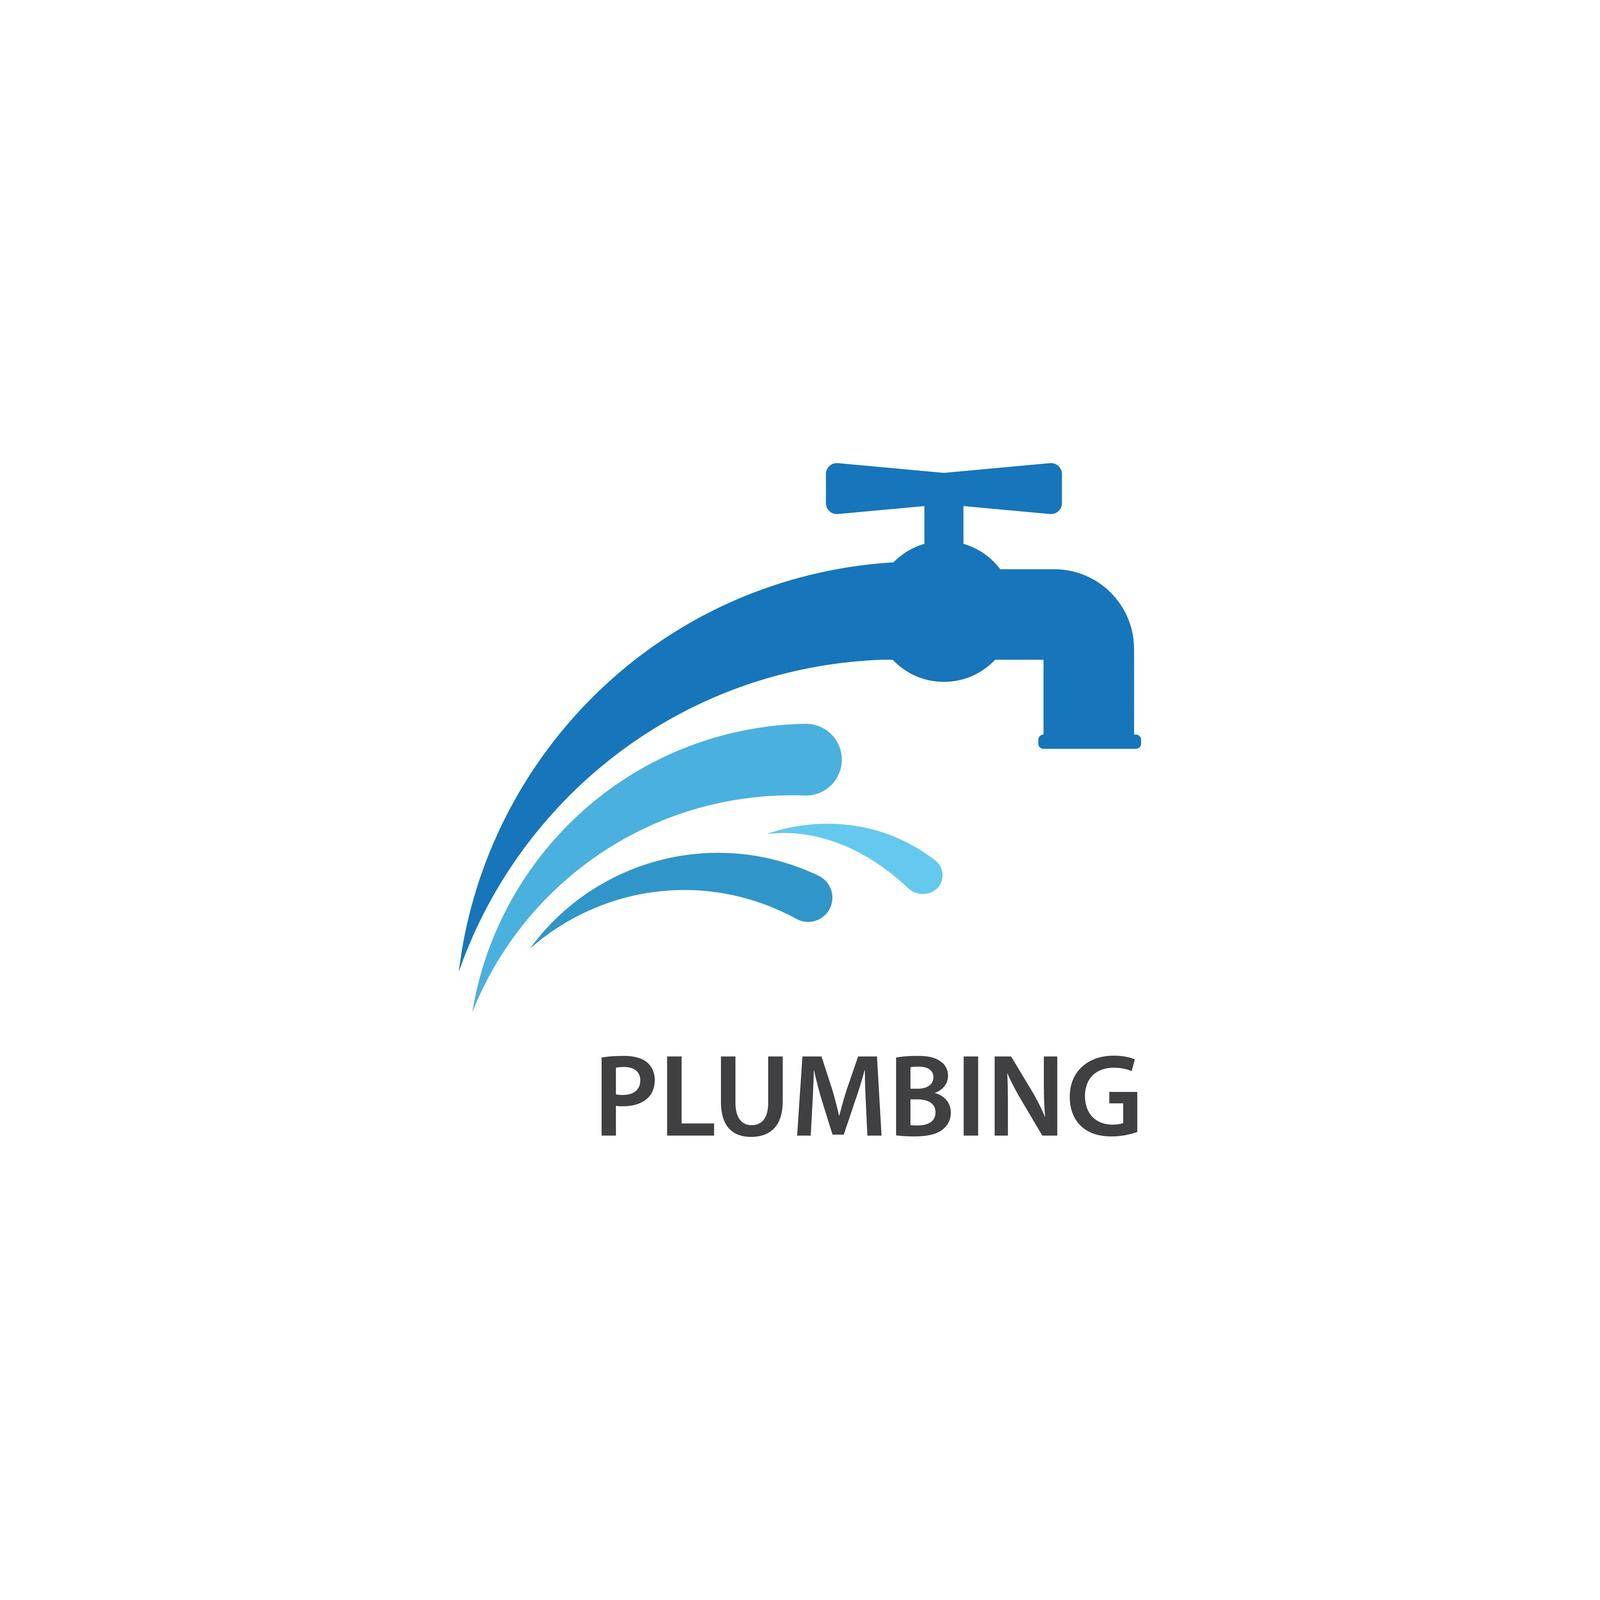 Plumbing symbol by awk